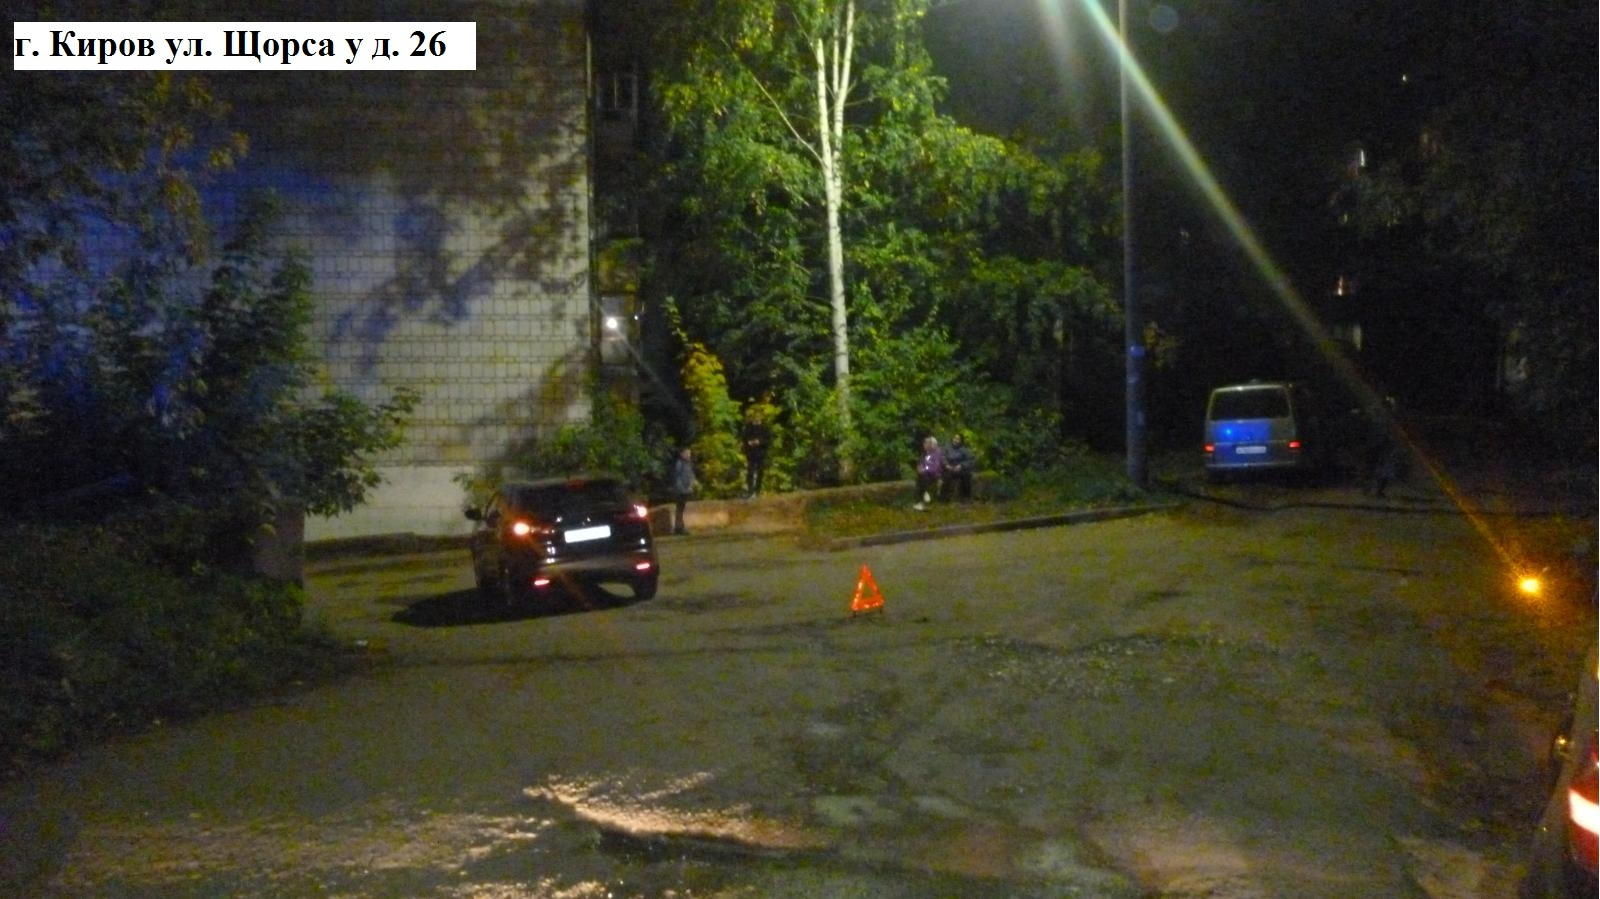 В Кирове во дворе дома произошла смертельная авария